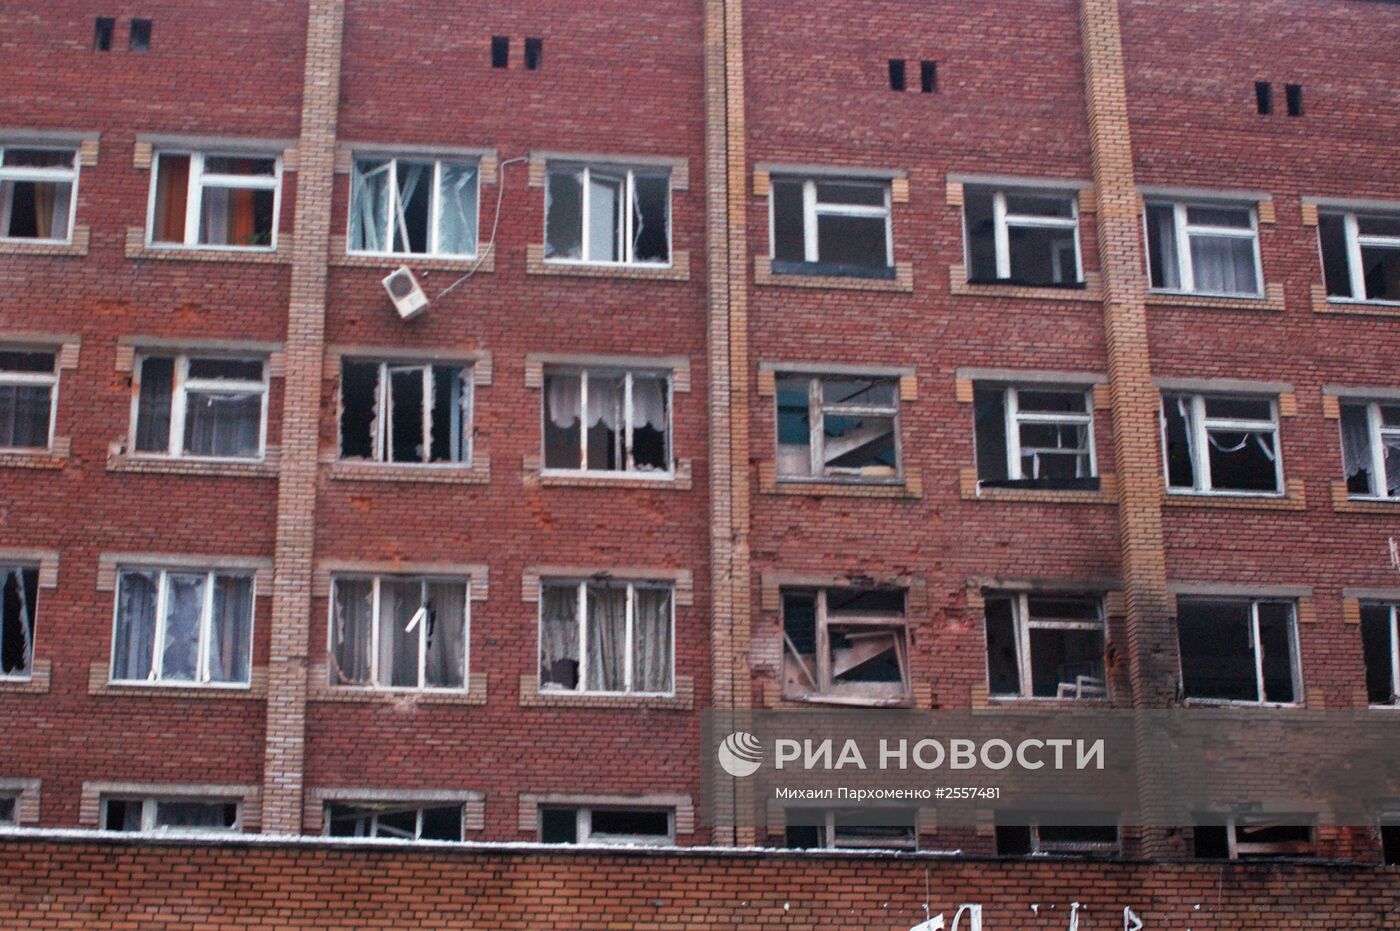 Артиллерийский снаряд попал в одну из больниц Донецка